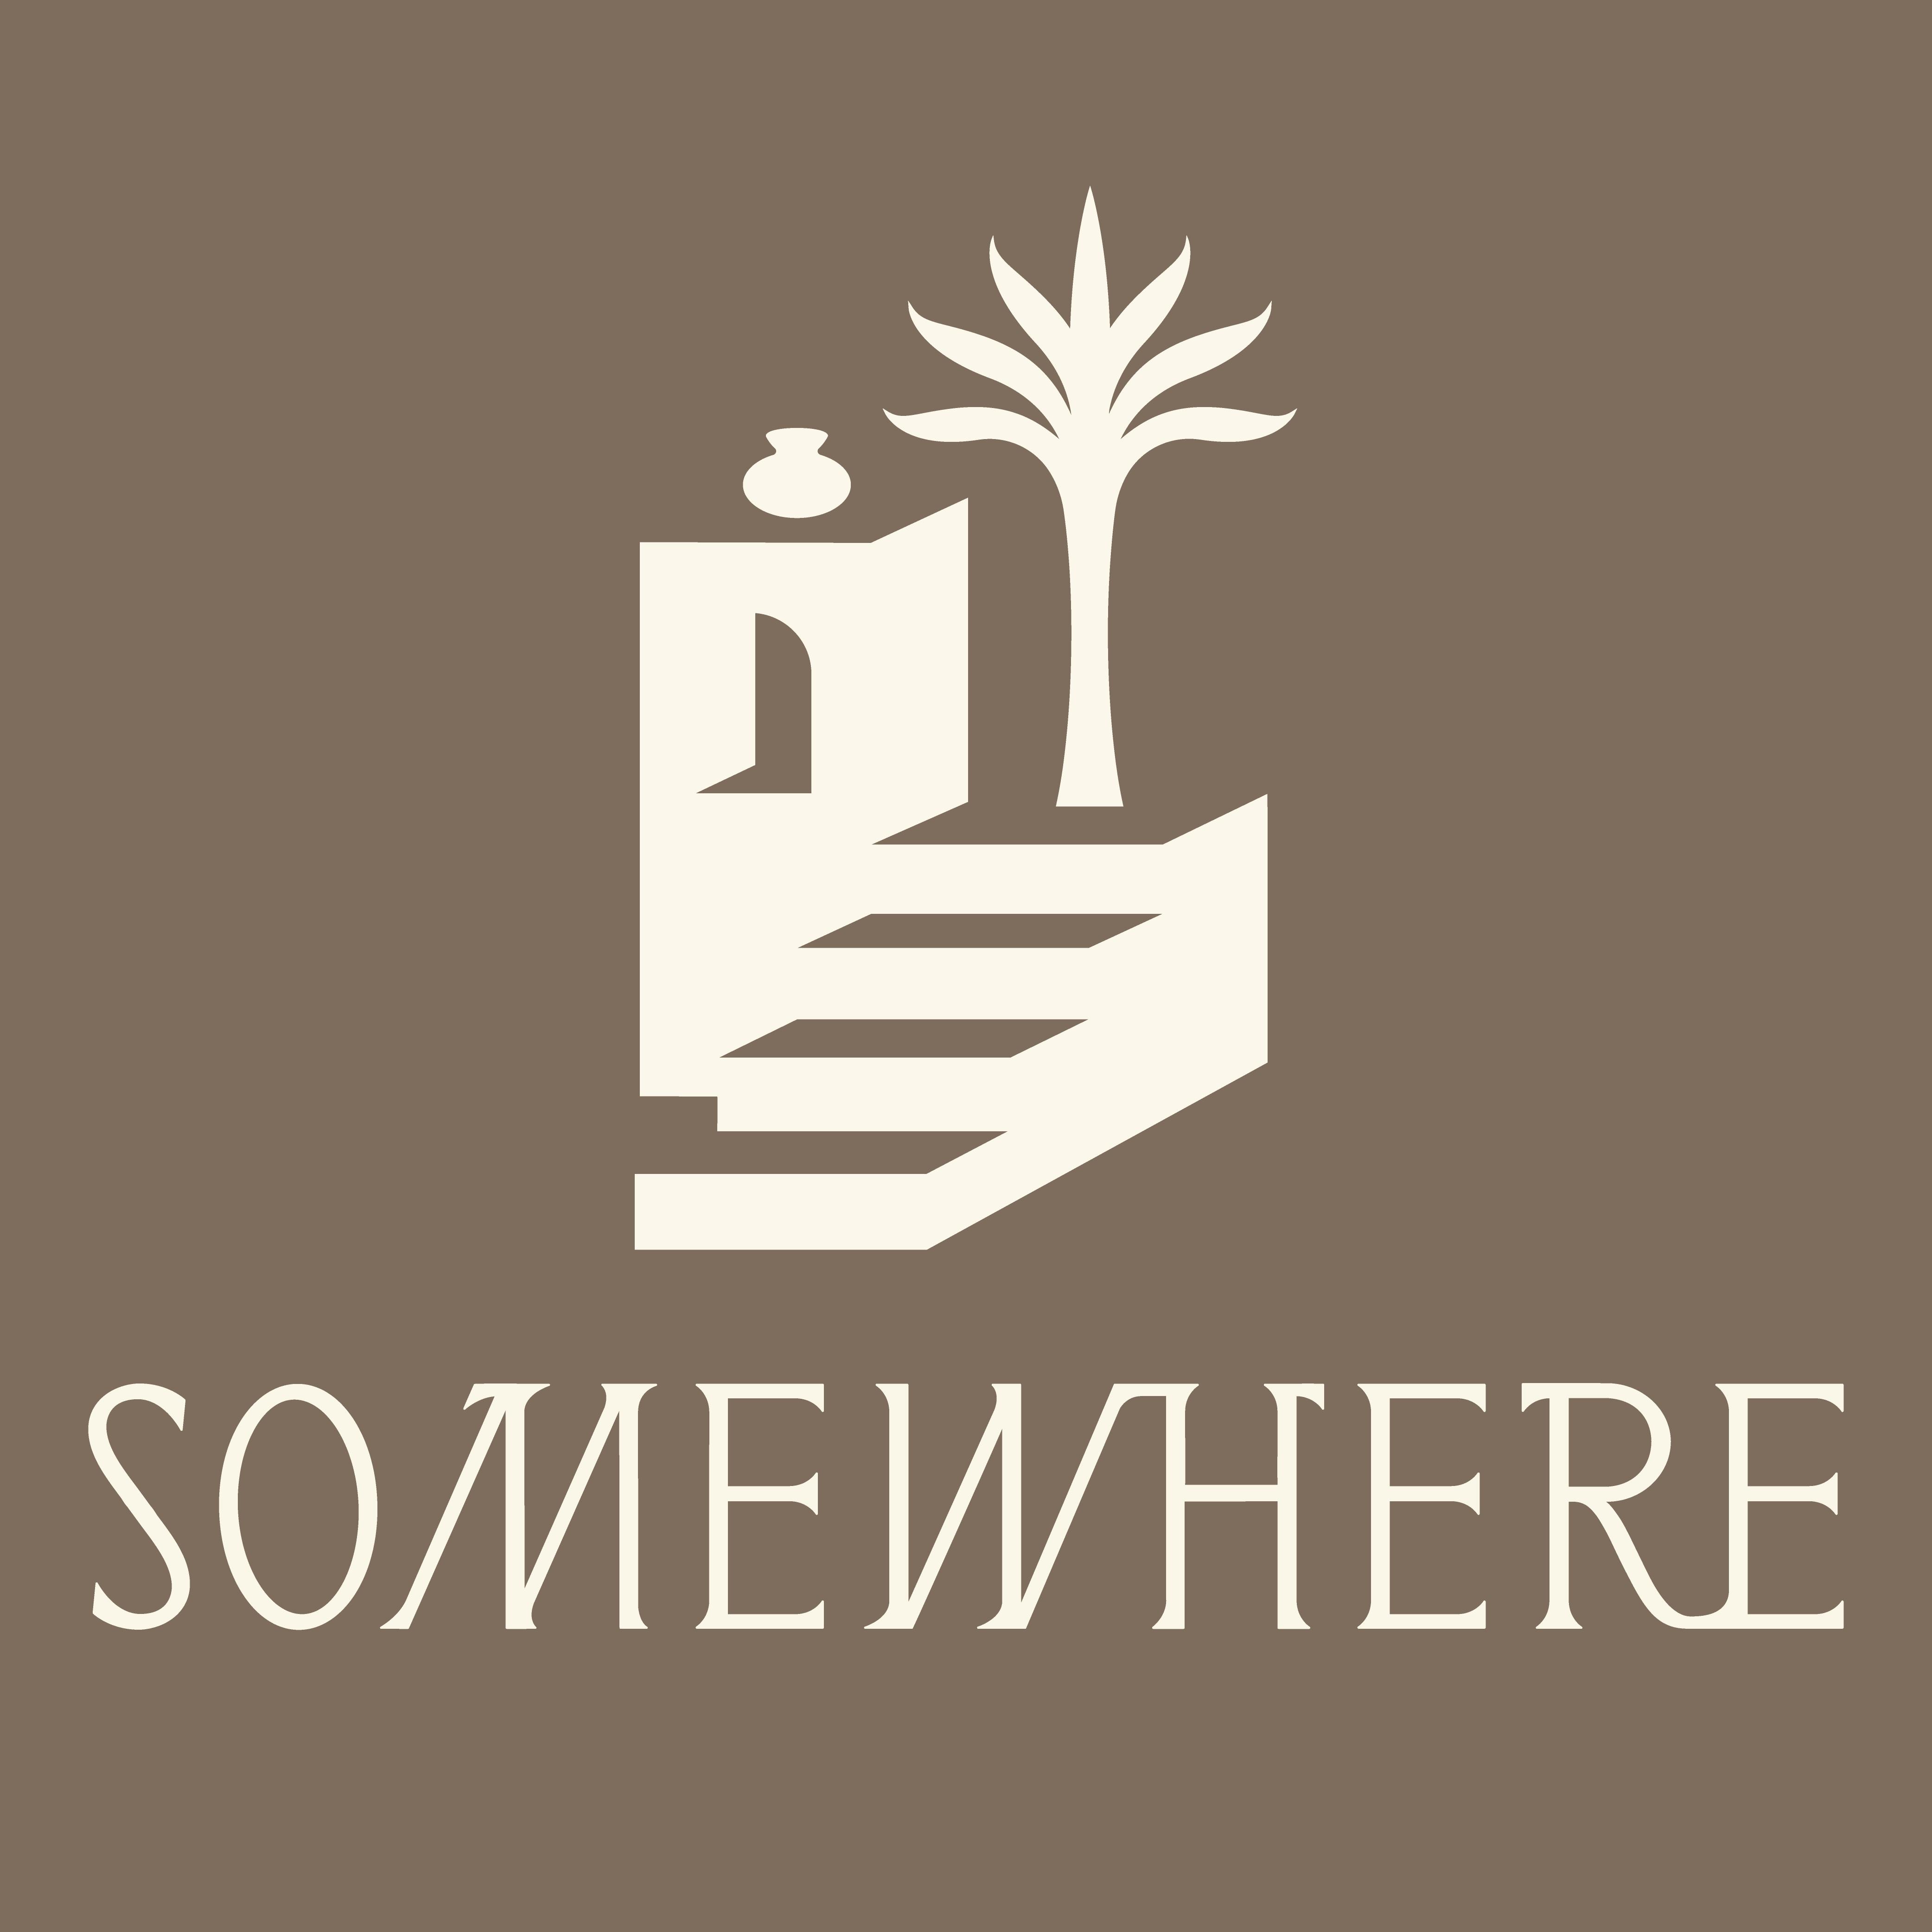 Somewhere logo